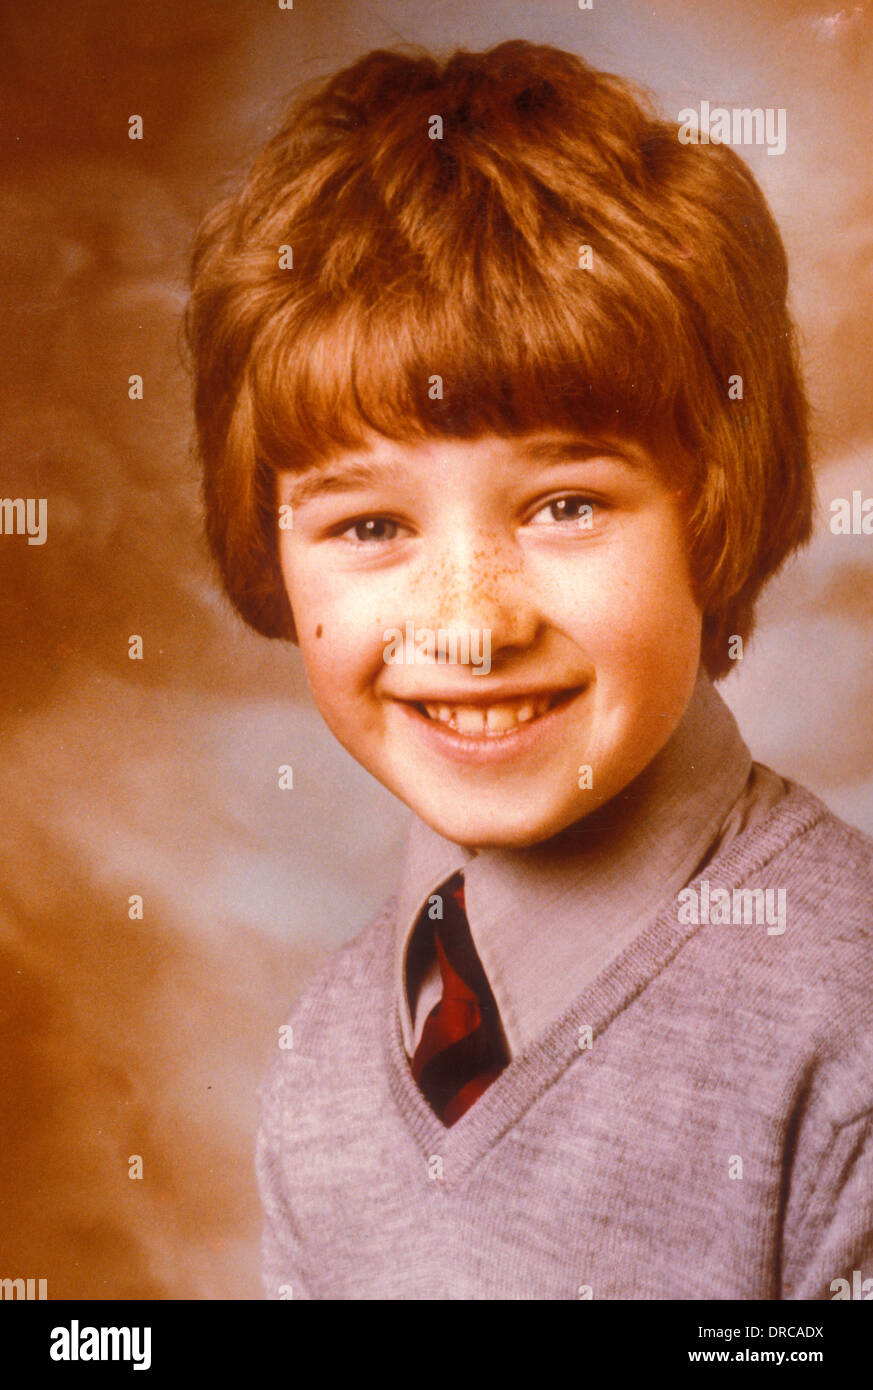 World Snooker player Stephen hendry como un niño Foto de stock